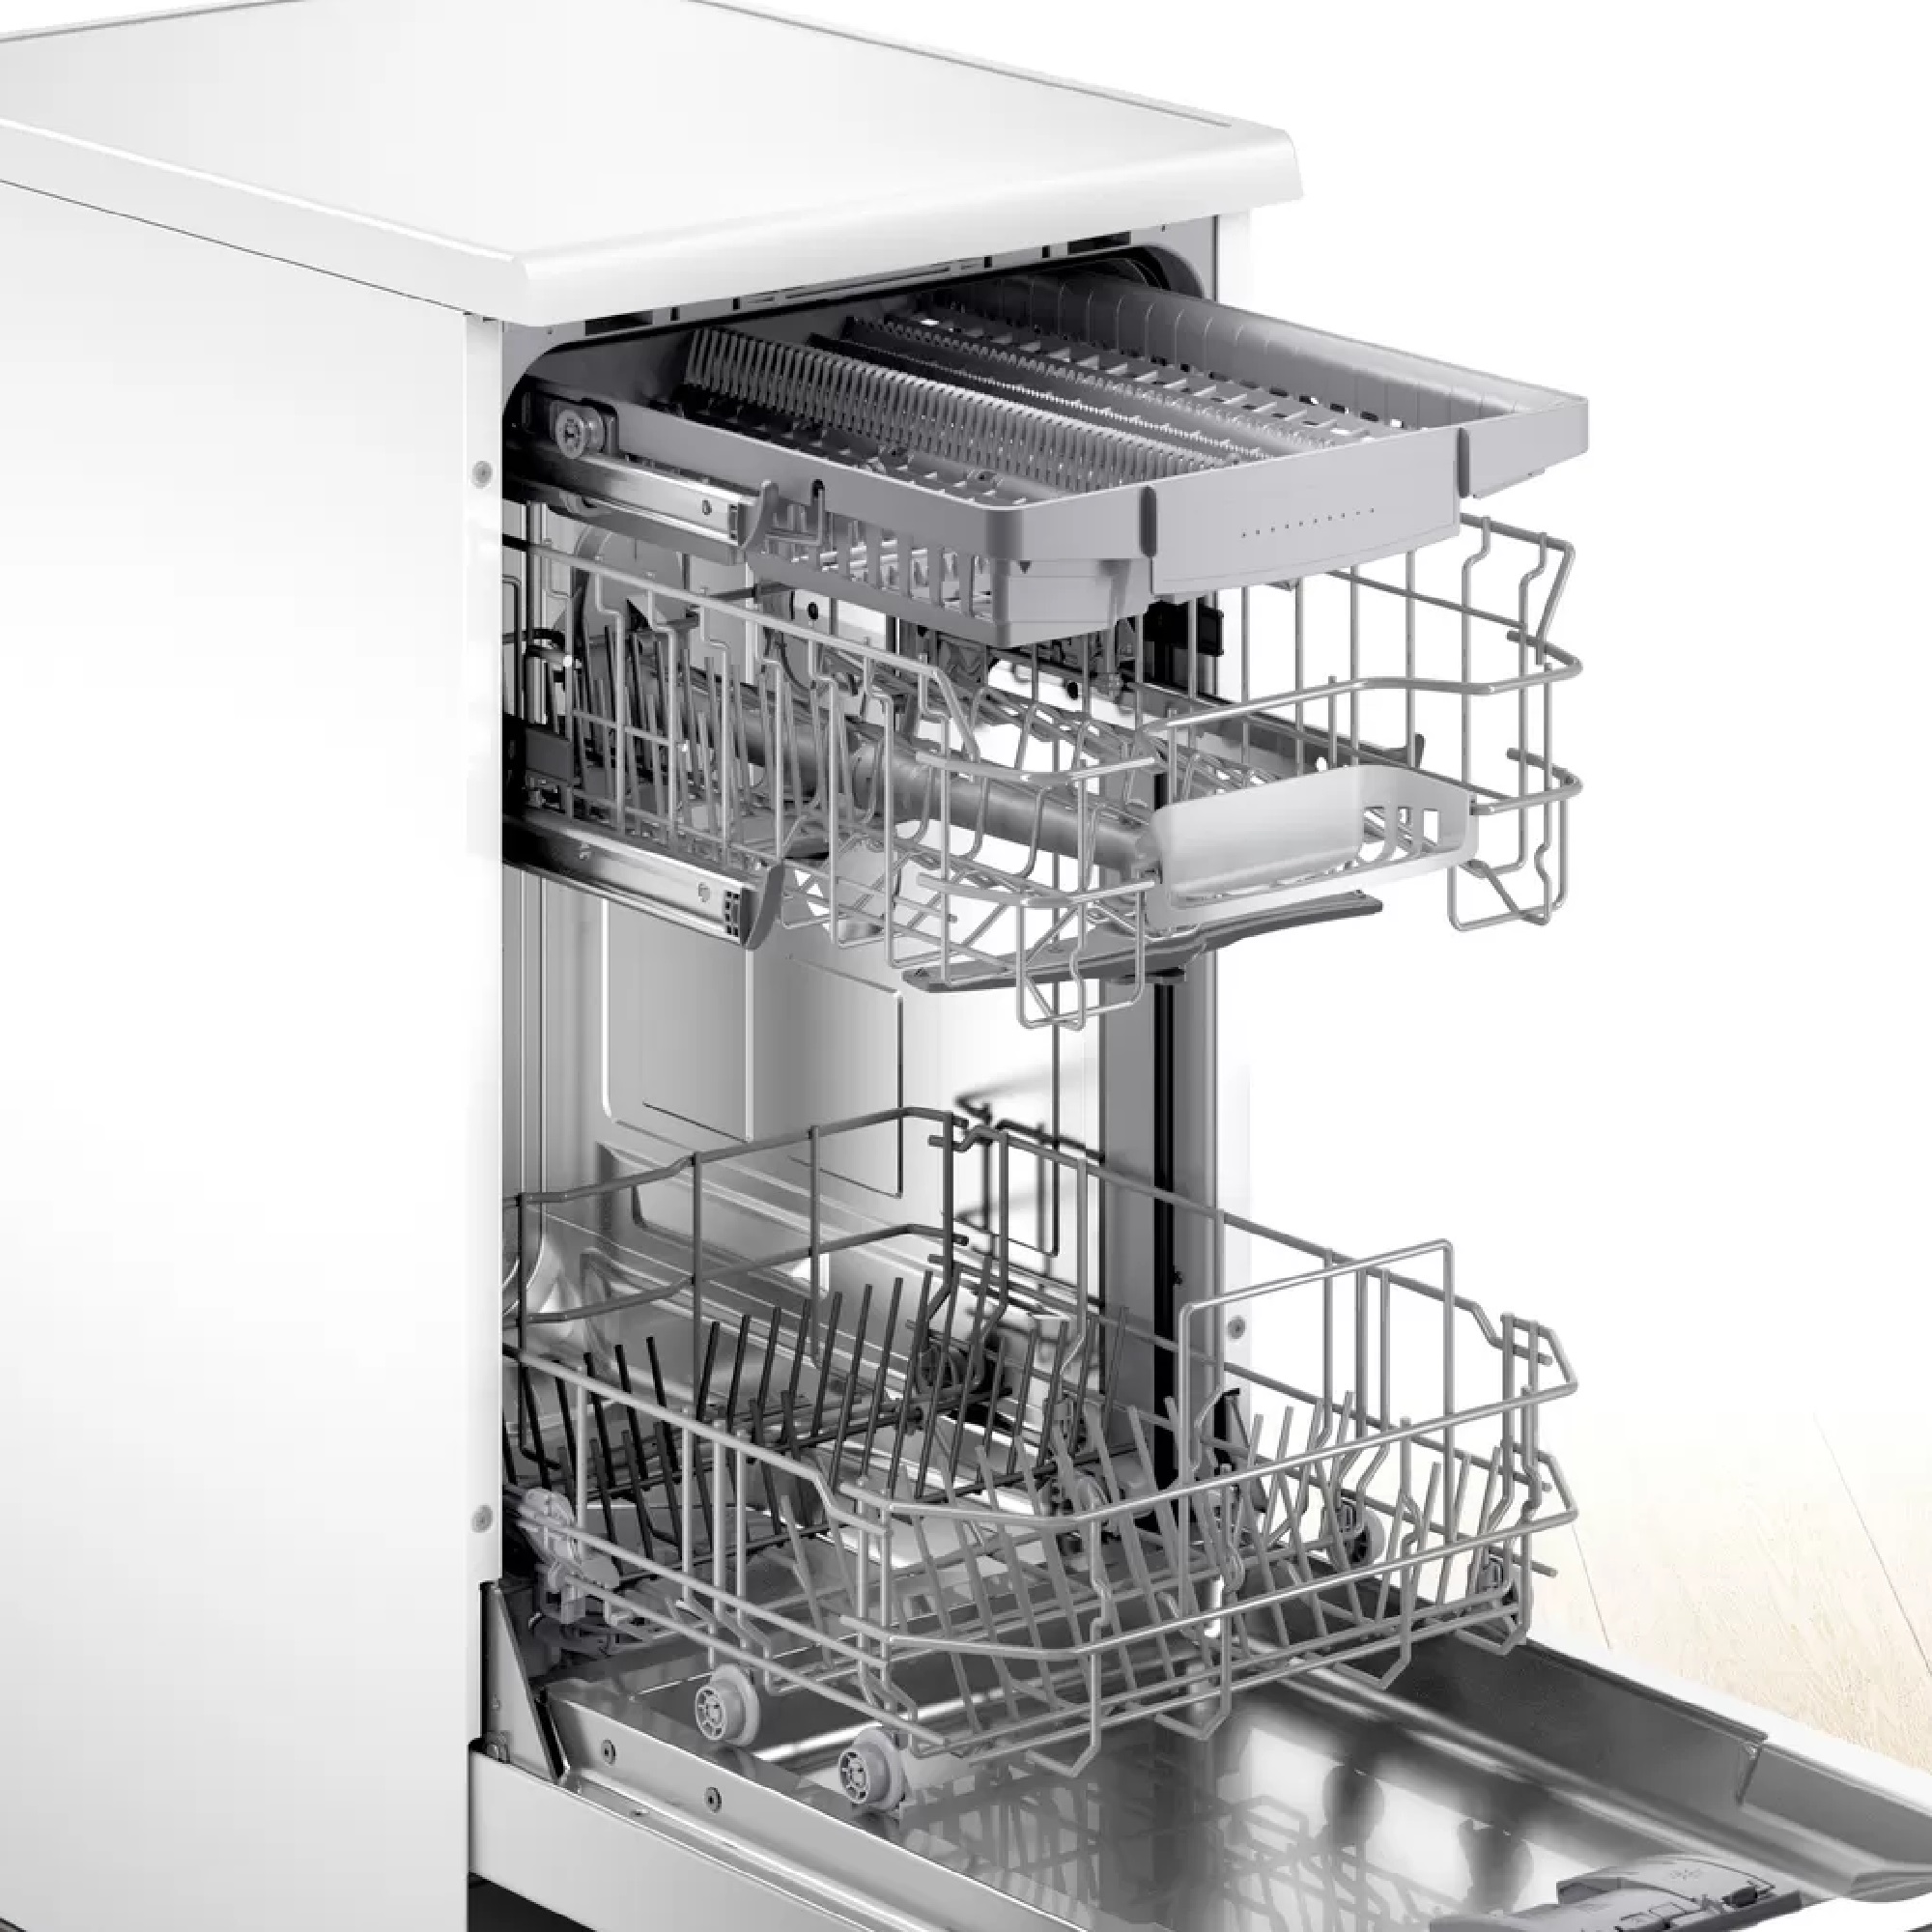 Посудомоечная машина bosch spv4xmx28e. Посудомоечная машина Bosch SPS 25dw03 r. Посудомоечная машина Bosch SPS 25ci00 e. Посудомоечная машина Bosch SPS 45ii05 e. Посудомойка Bosch sps2hmw2fr.